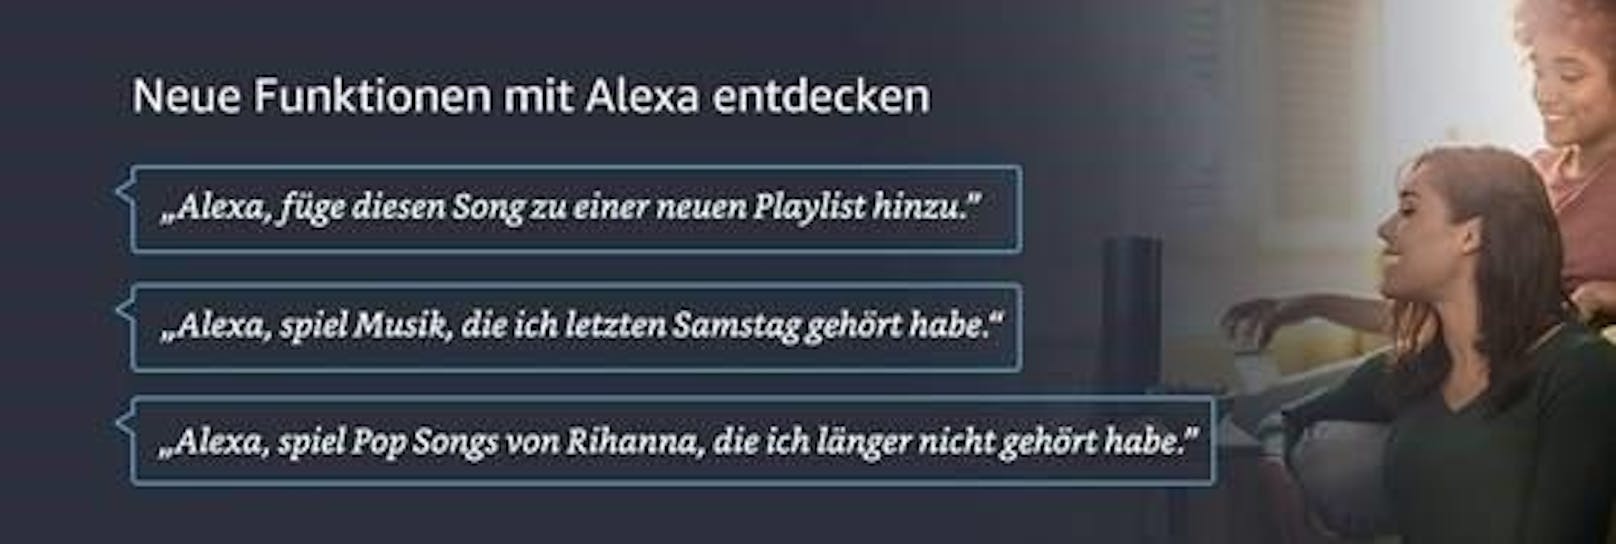 <b>26. März 2018:</b> Amazons Cloud-basierte Sprachassistentin Alexa hat erneut dazugelernt und kennt seit heute neue Sprachbefehle für Amazon Music. Bisher war es möglich, eigene Playlists über die Web-Applikation bzw. die mobile App für iOS und Android manuell mit neuer Musik zu ergänzen. Nutzer von Prime Music und Amazon Music Unlimited können jedoch ab sofort ganz einfach per Sprachbefehl Lieder zu einer bestimmten Playlist hinzufügen oder neue Playlists erstellen. Zudem findet Alexa nun auch Musik, die man entweder erst kürzlich gehört oder auch schon länger nicht mehr abgespielt hat. Beispiele: "Alexa, erstelle eine neue Playlist", "Alexa, füge diesen Song zu einer neuen Playlist hinzu" oder "Alexa, spiel Hip Hop, den ich vor zwei Wochen gehört habe"